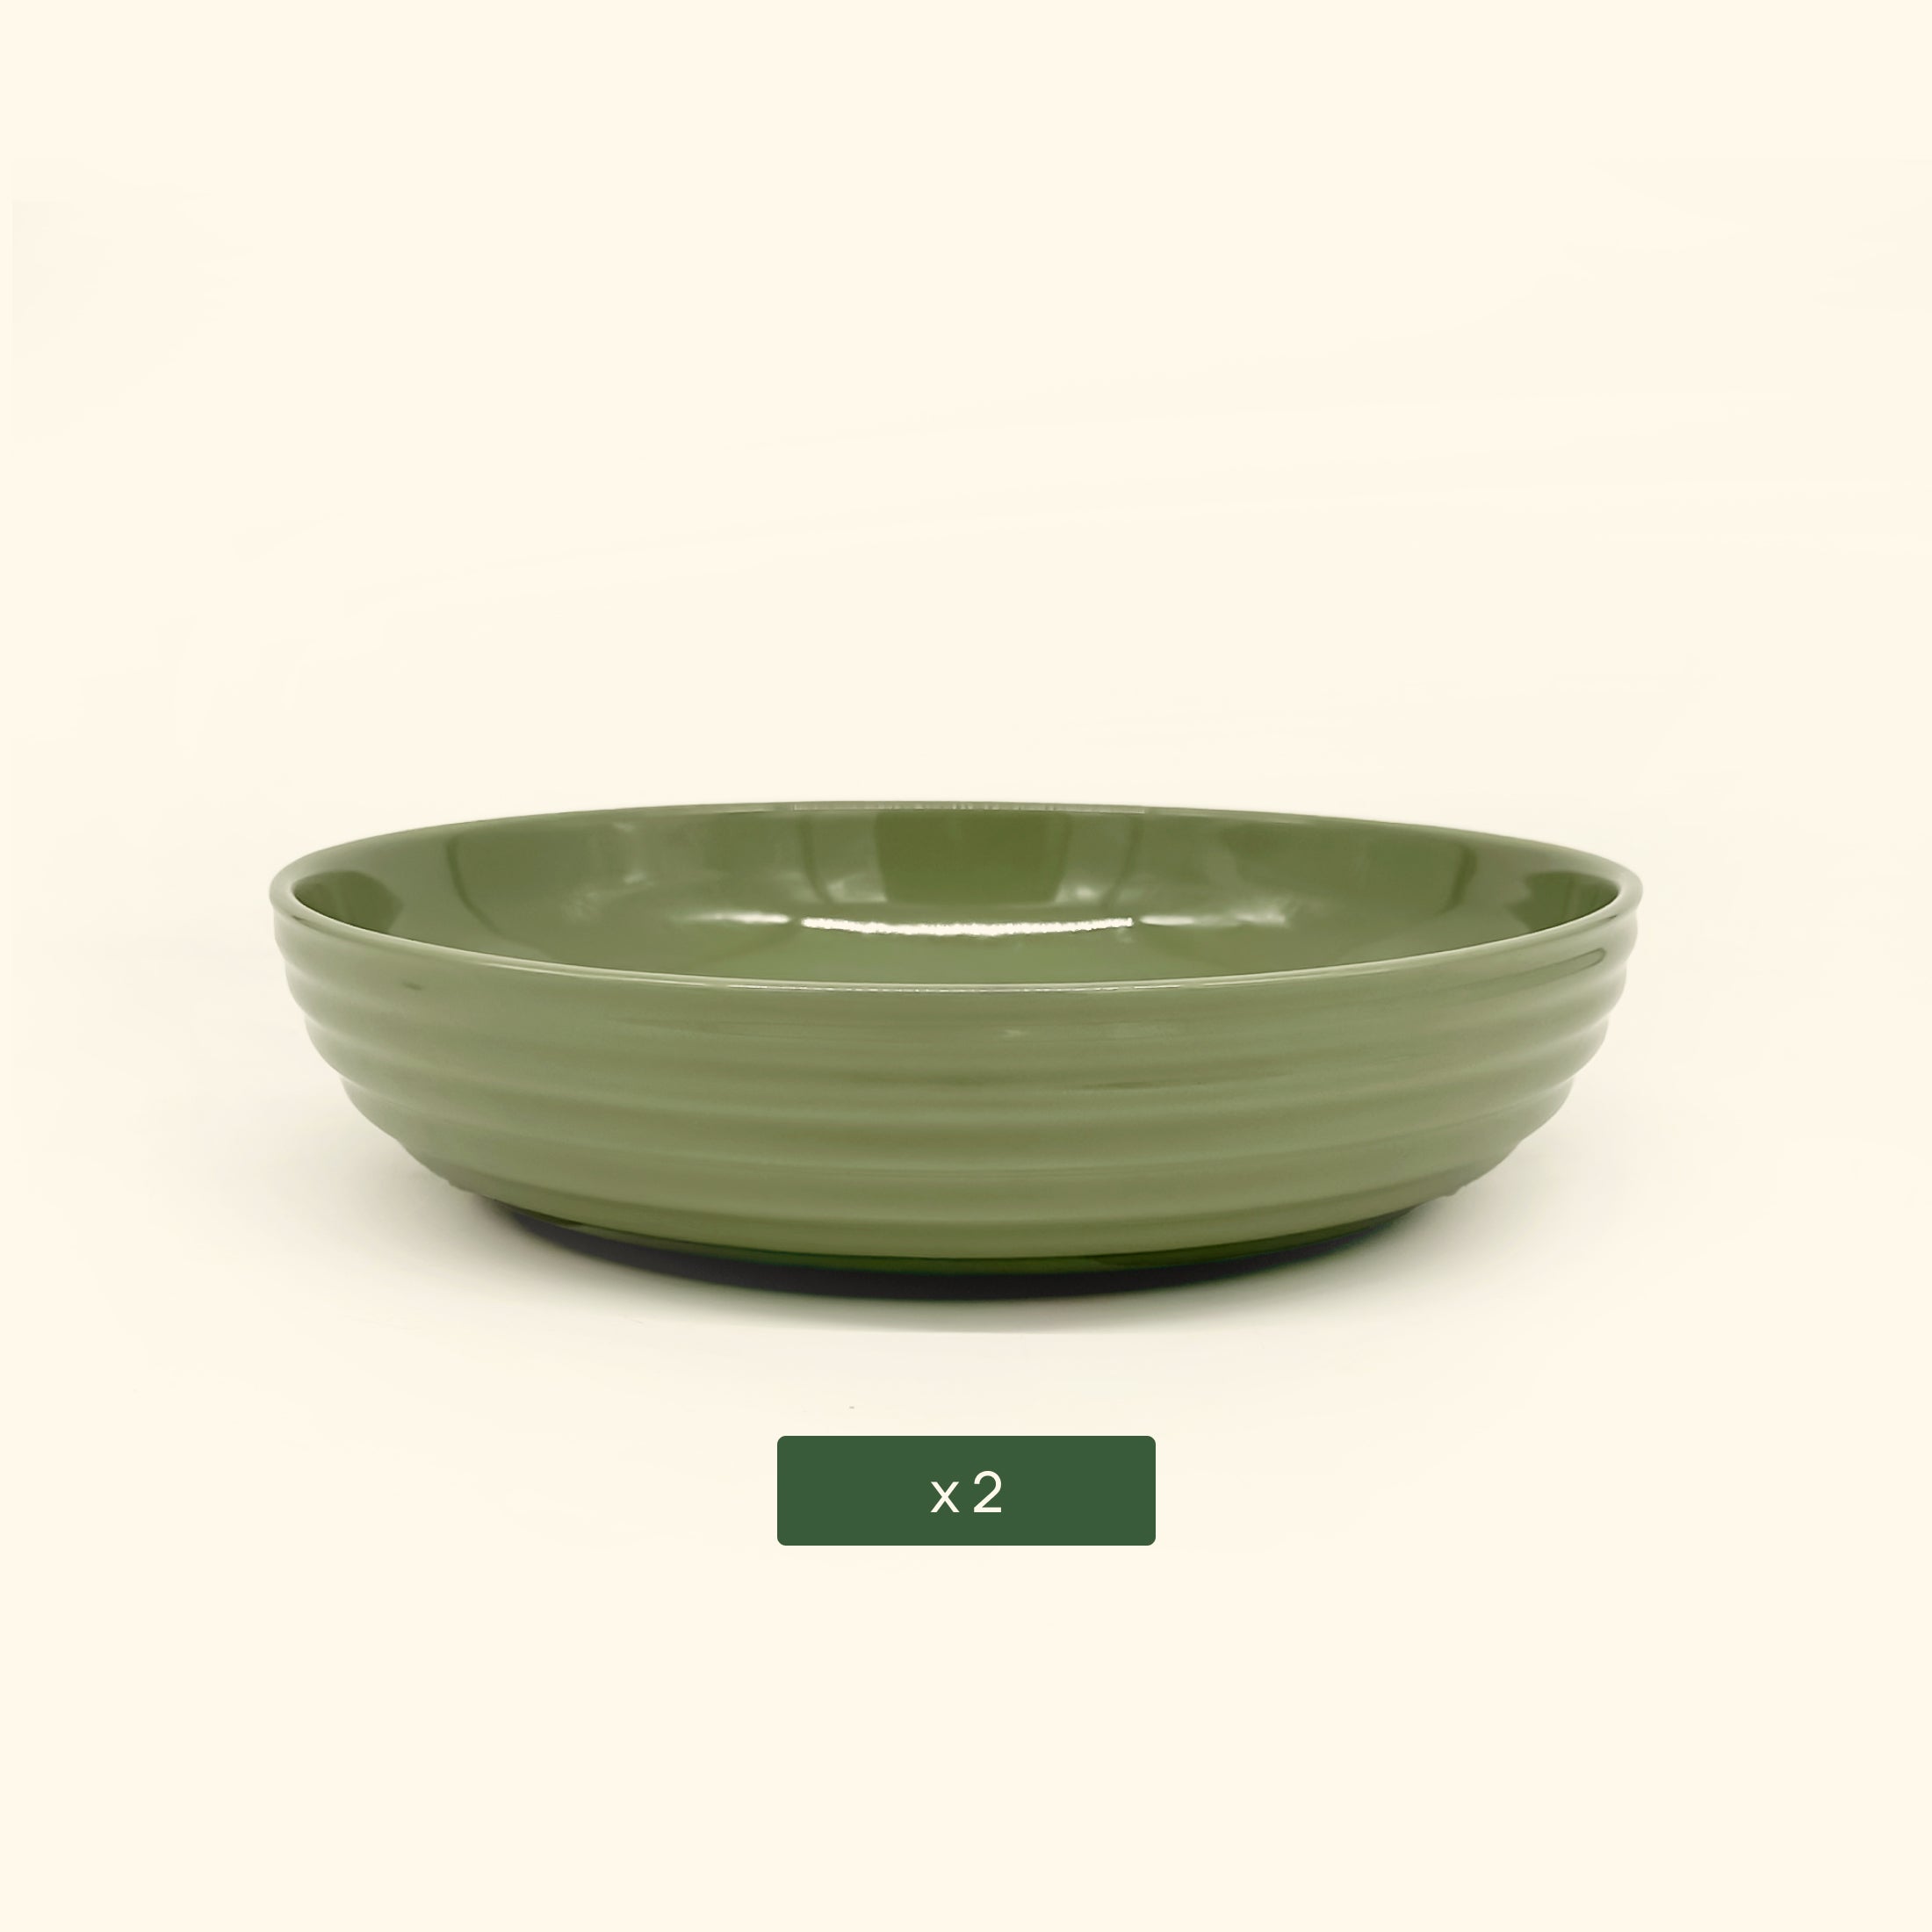 Vego Salad Serving Bowl - 2 Pack